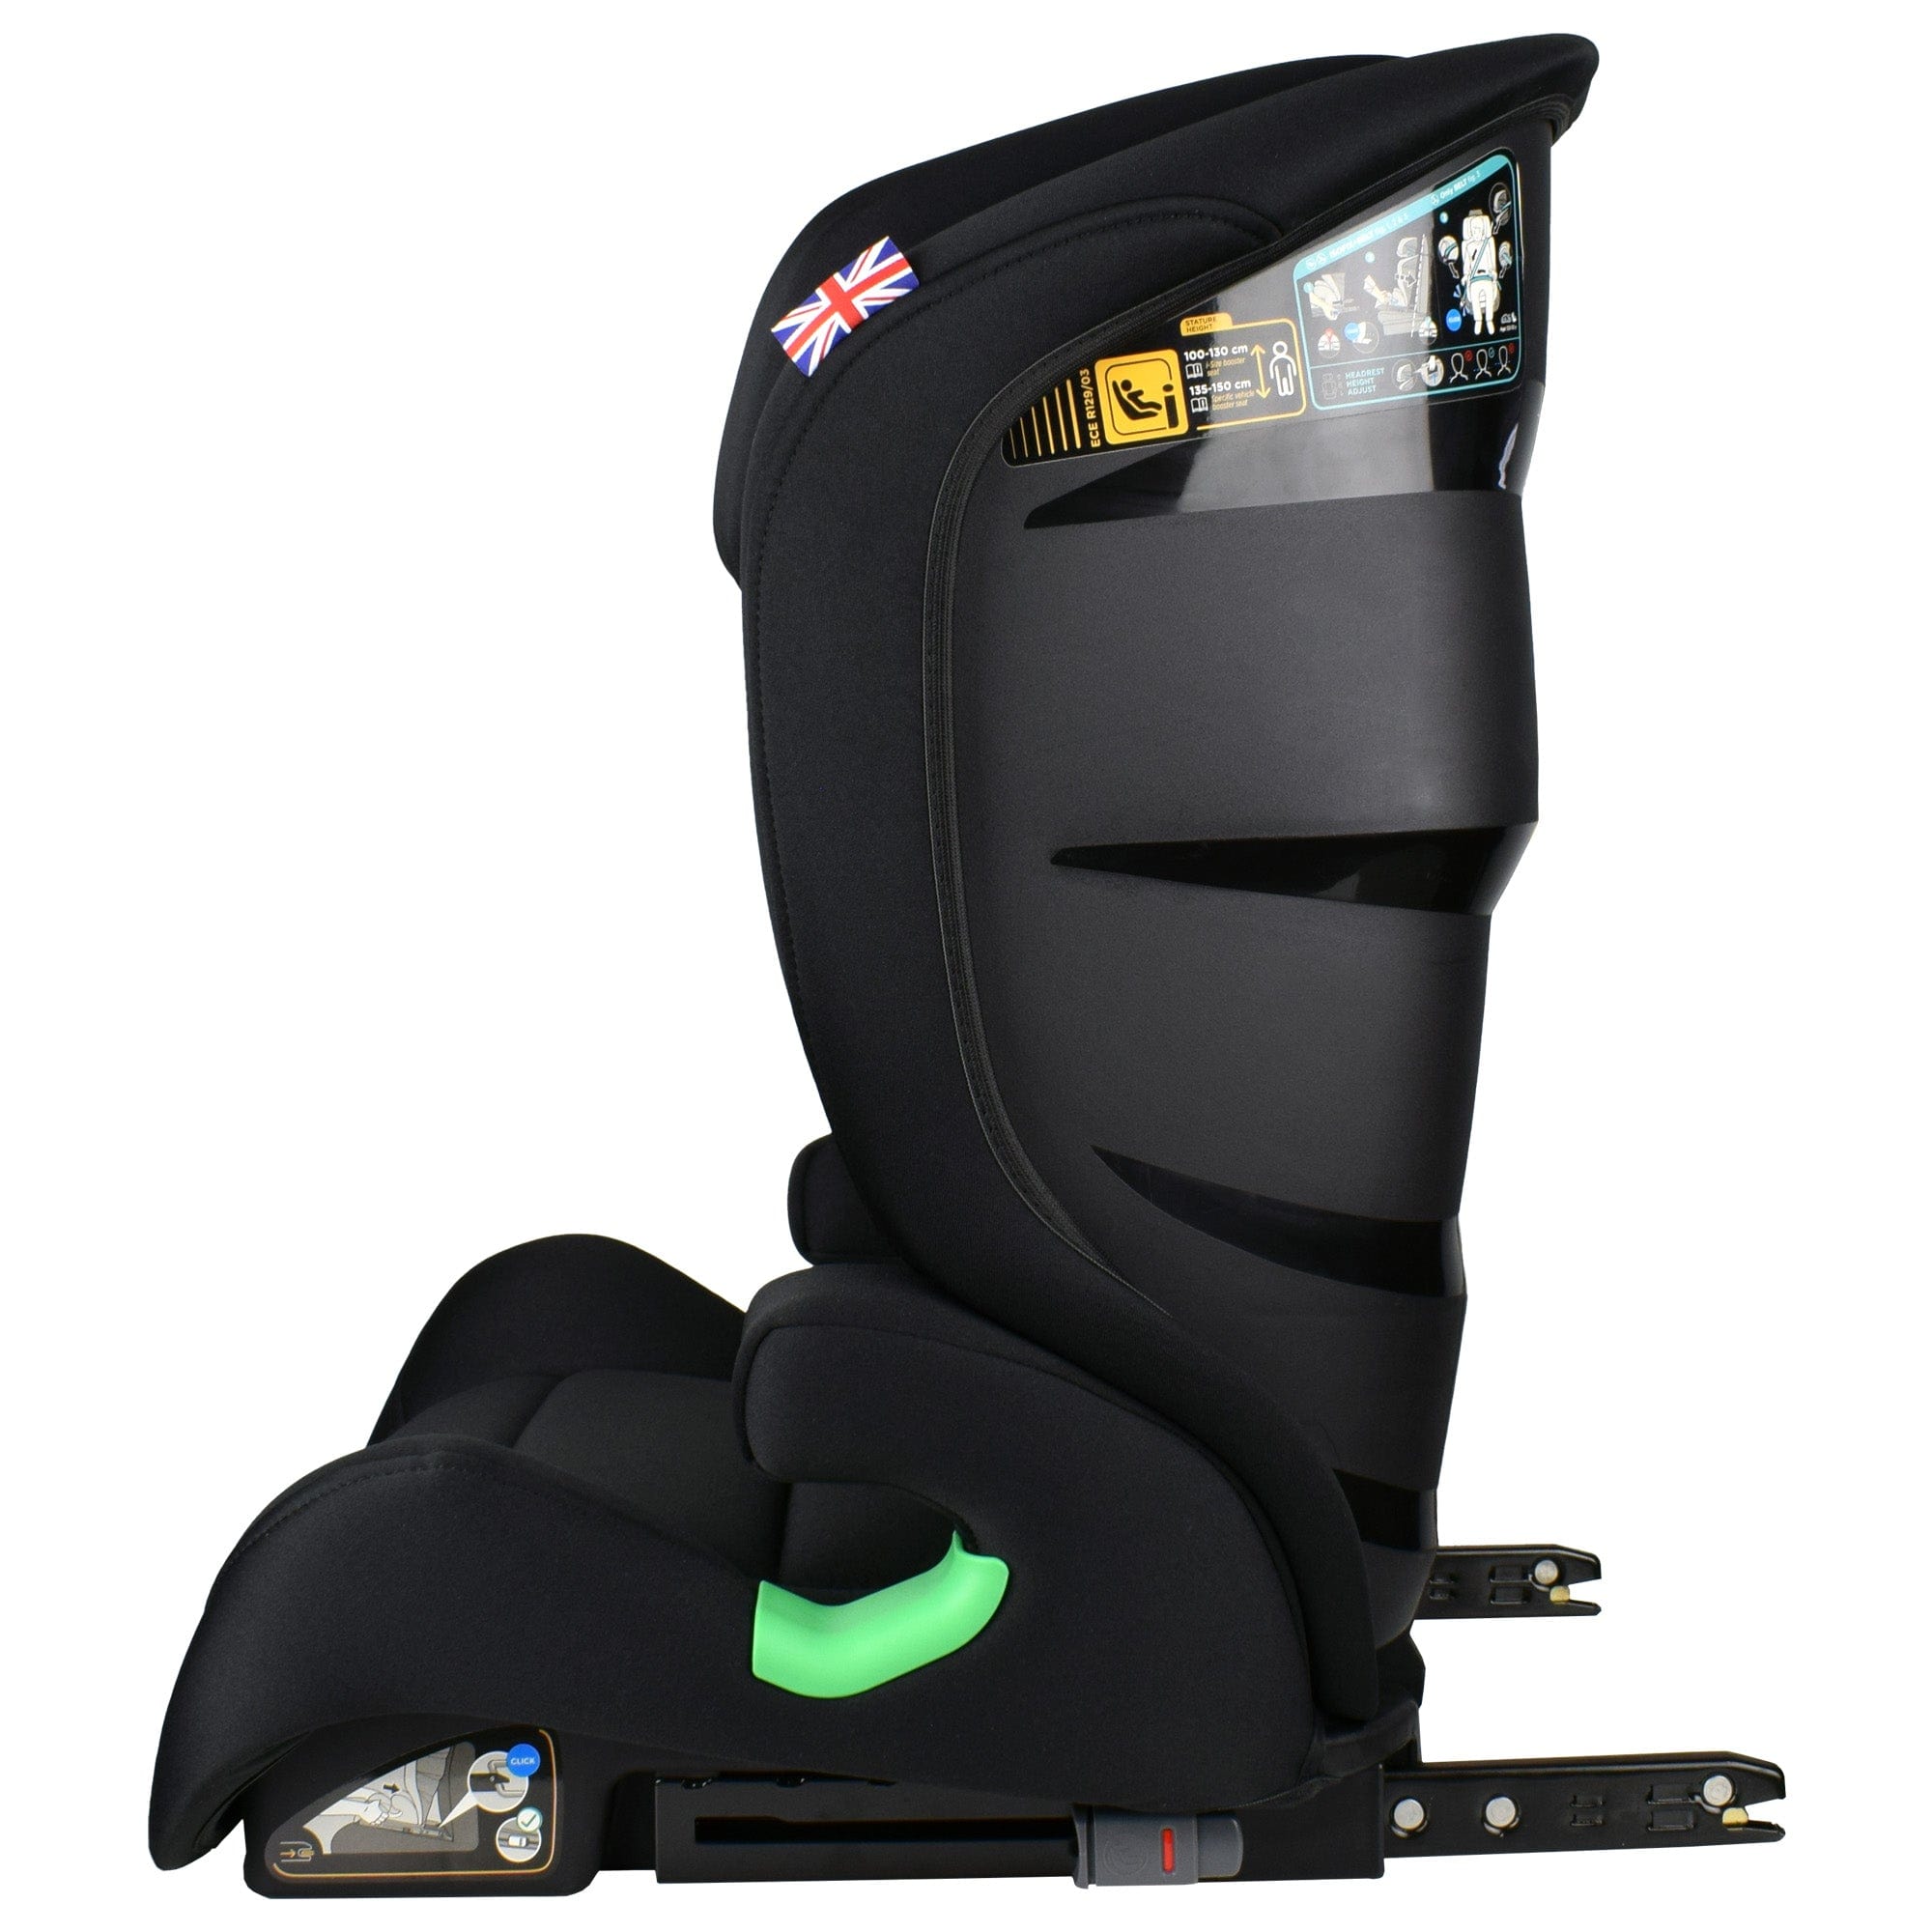 Cozy N Safe baby car seats Cozy N Safe Apache i-Size 100-150cm - Onyx EST-04-A